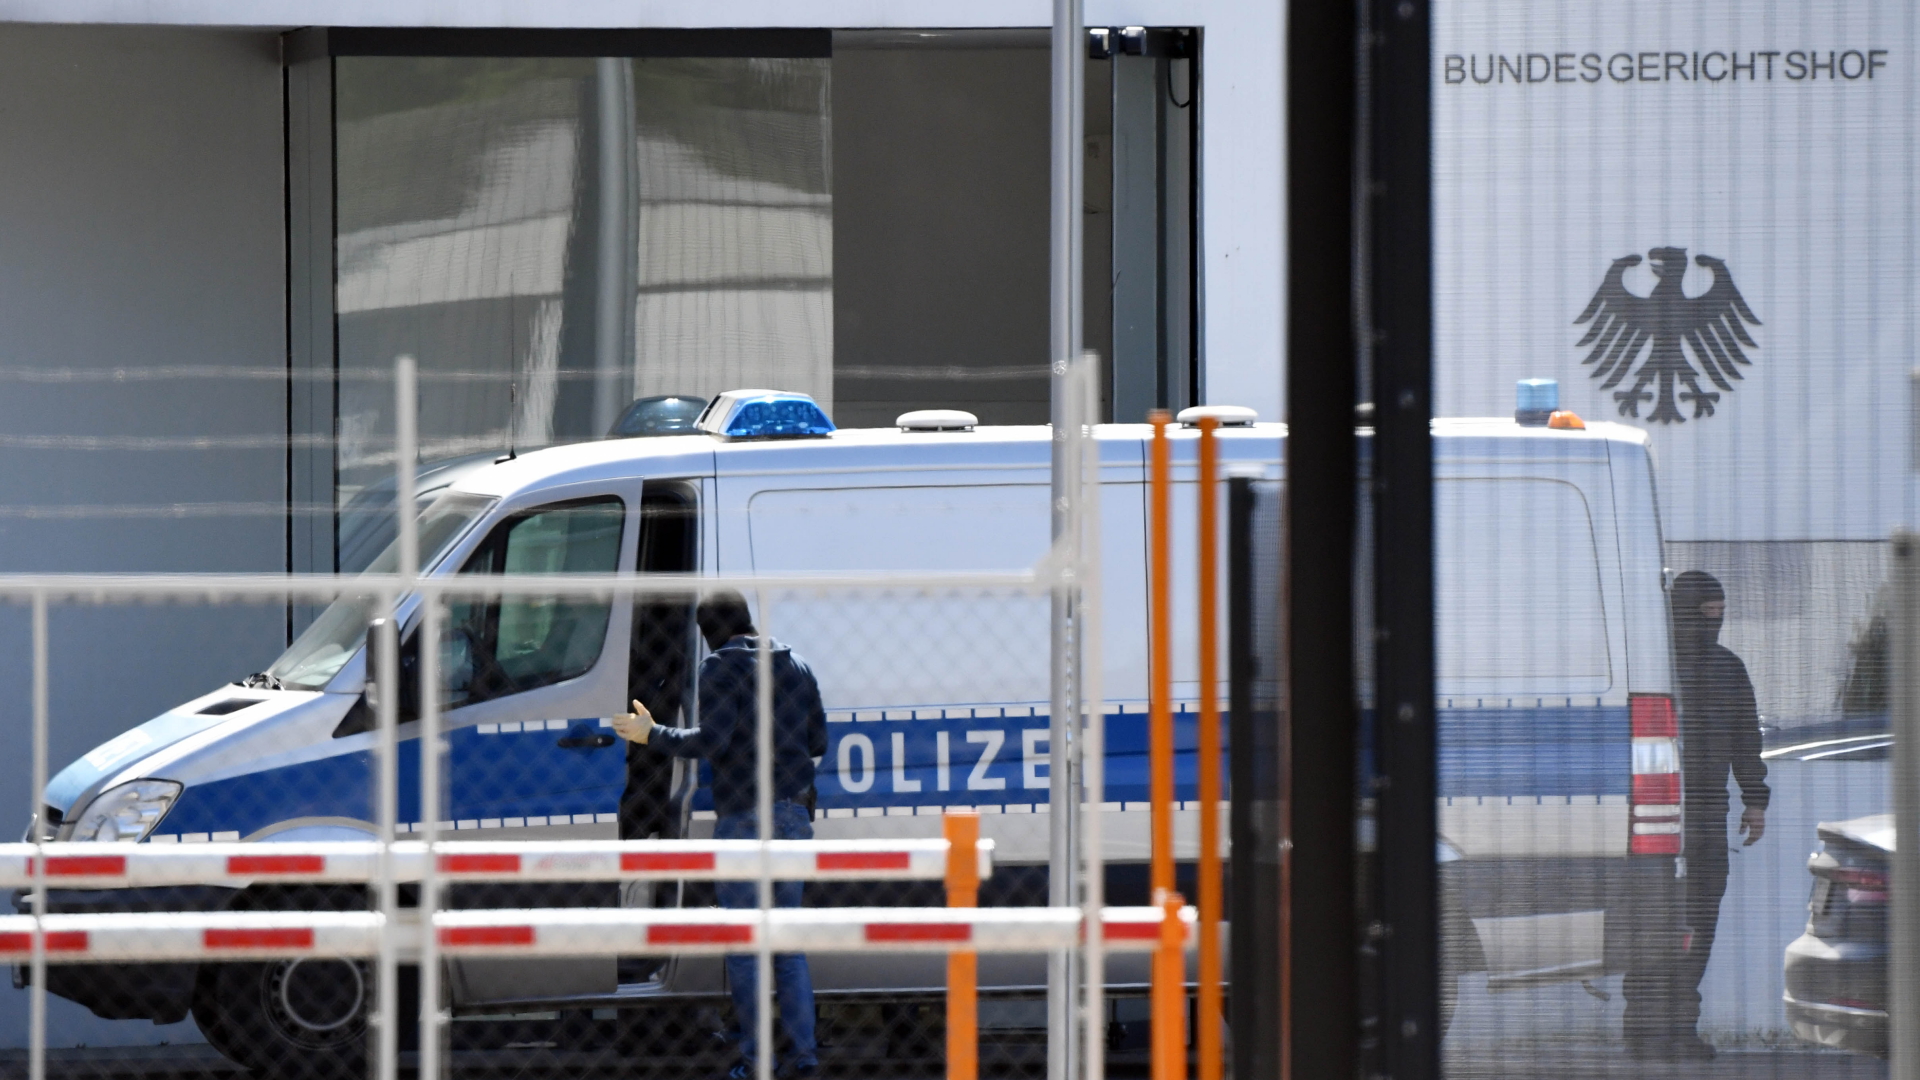 Polizeibus vor Bundesgerichtshof in Karlsruhe | dpa